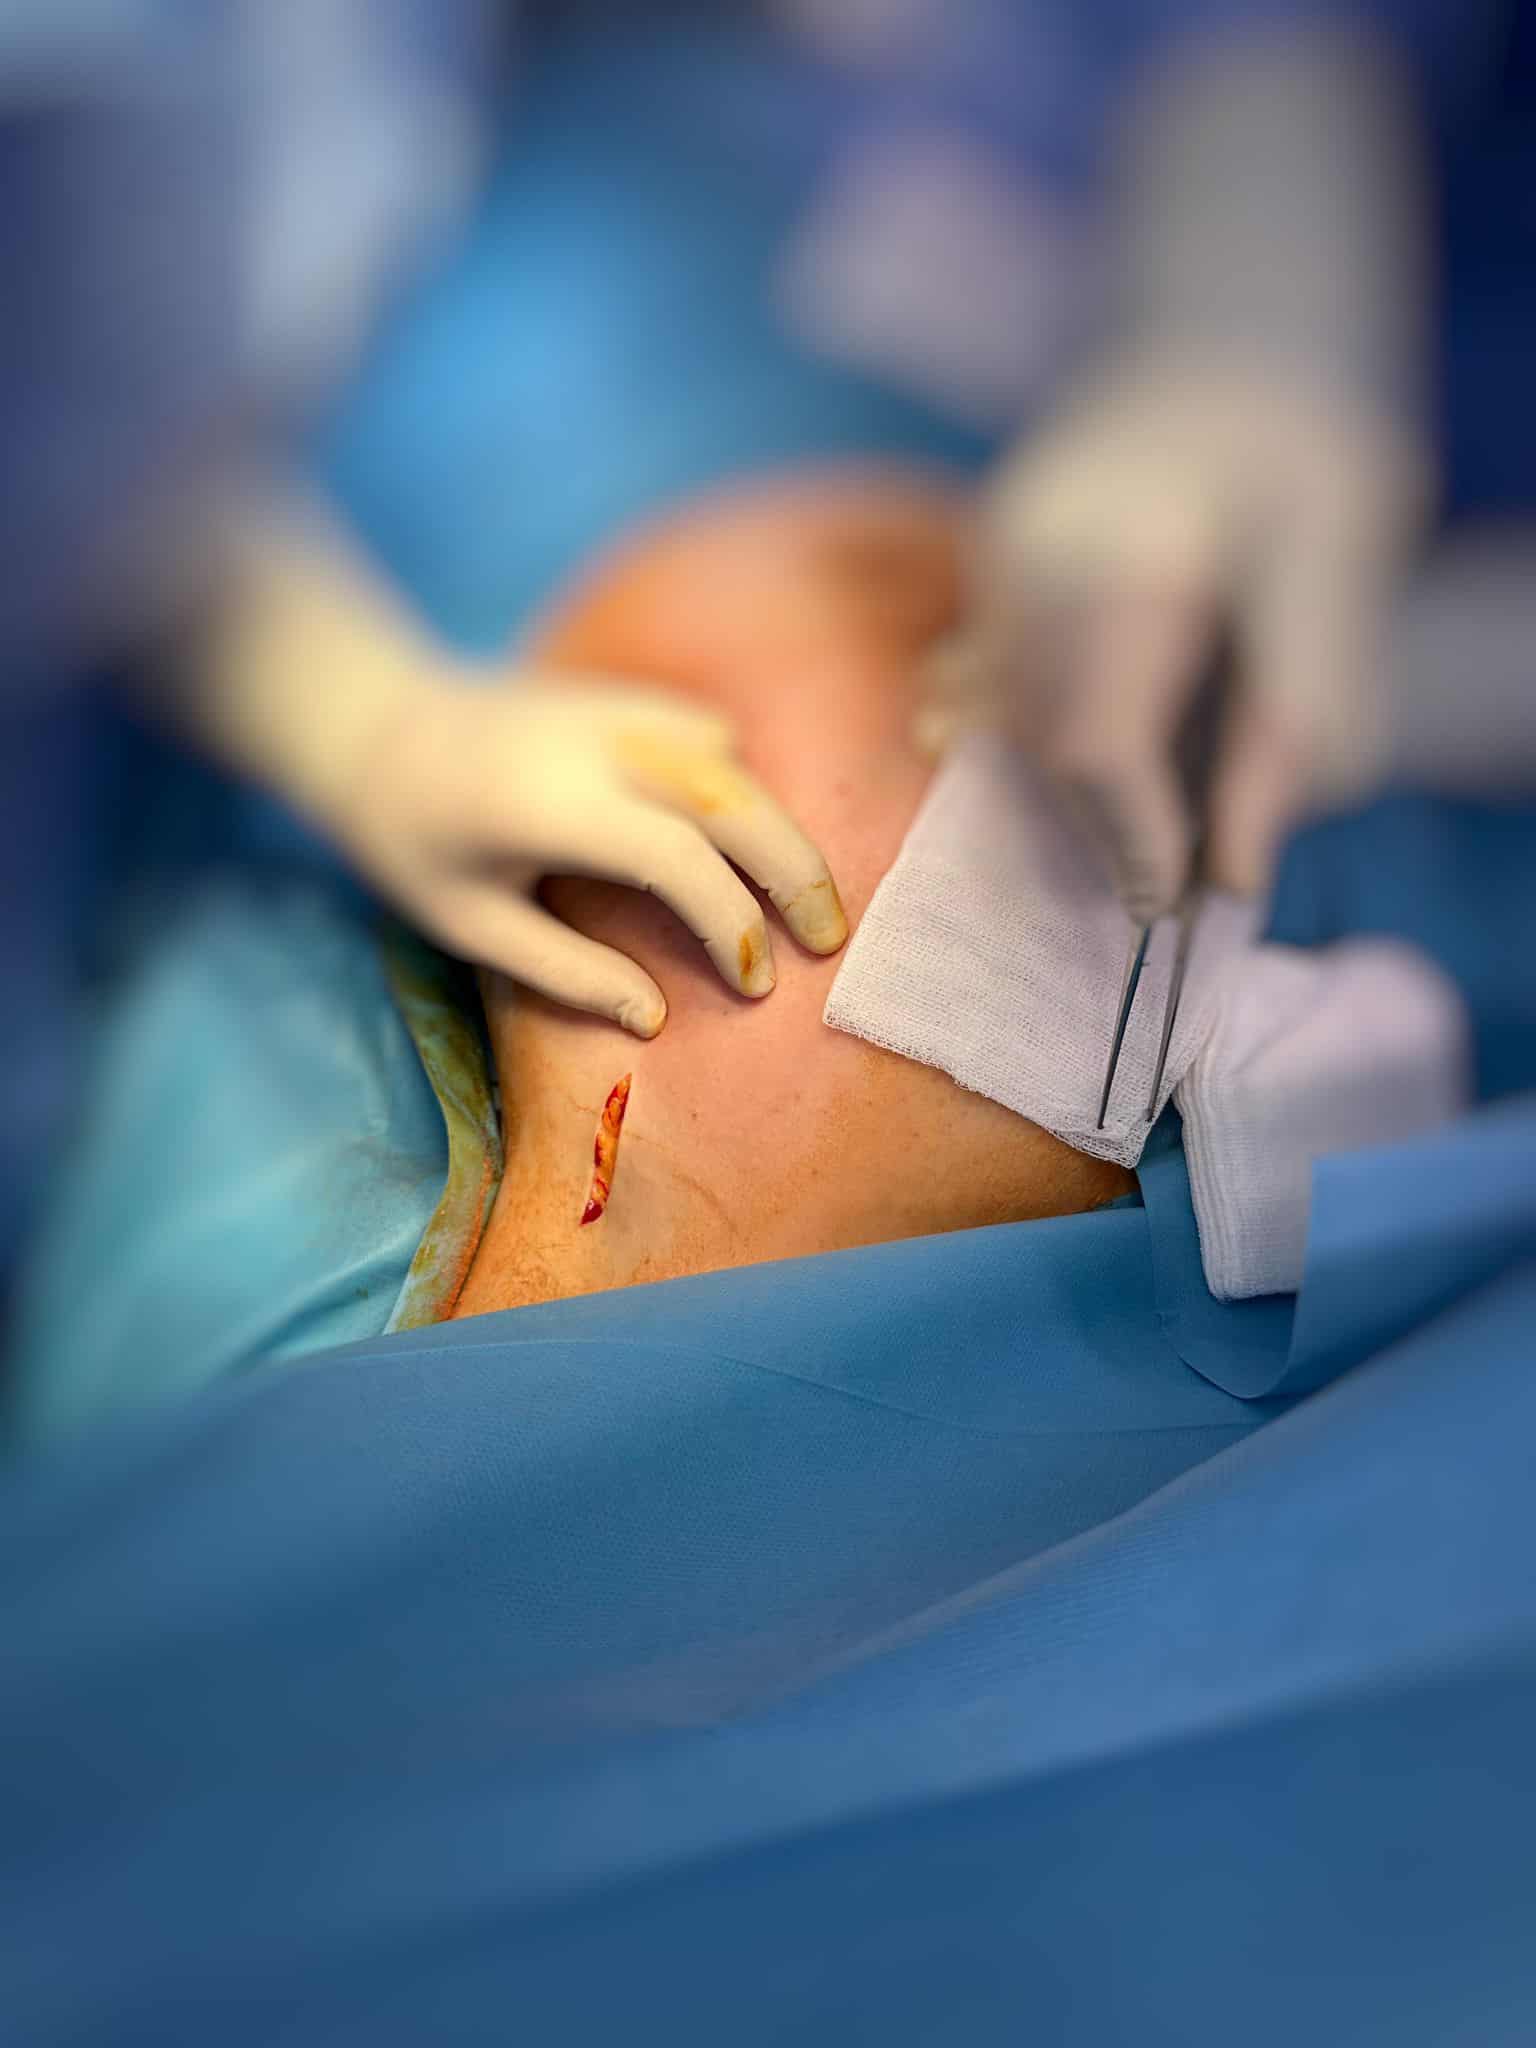 intervenții minim invazive asupra cancerului de sân cu aparatură ultramodernă la spitalul județean sibiu